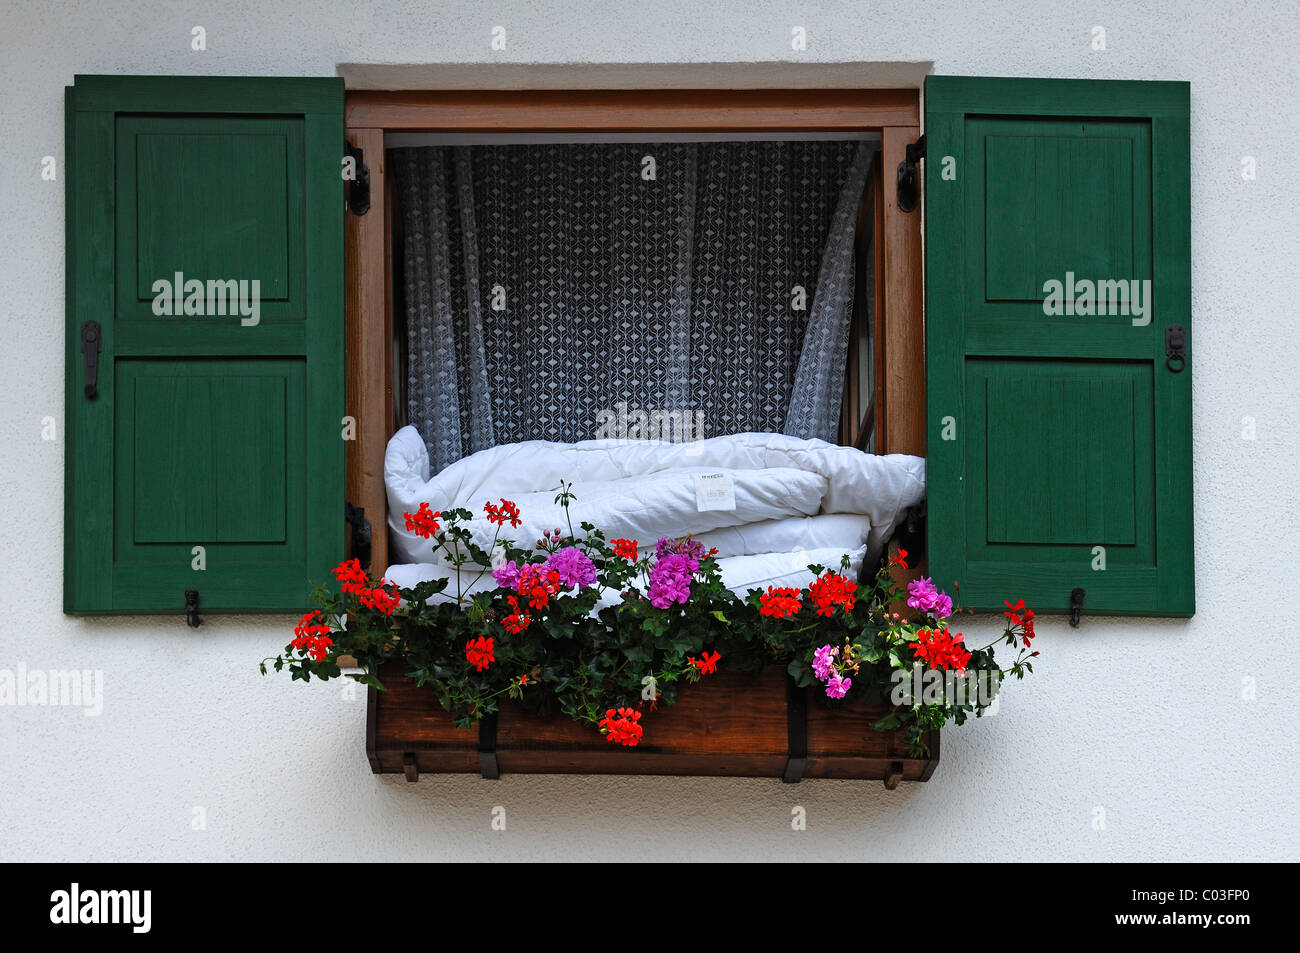 Bettdecken aus einem Fenster mit Blumenkasten für Lüftung, Mittenwald,  Upper Bavaria, Bavaria, Germany, Europa hängen Stockfotografie - Alamy